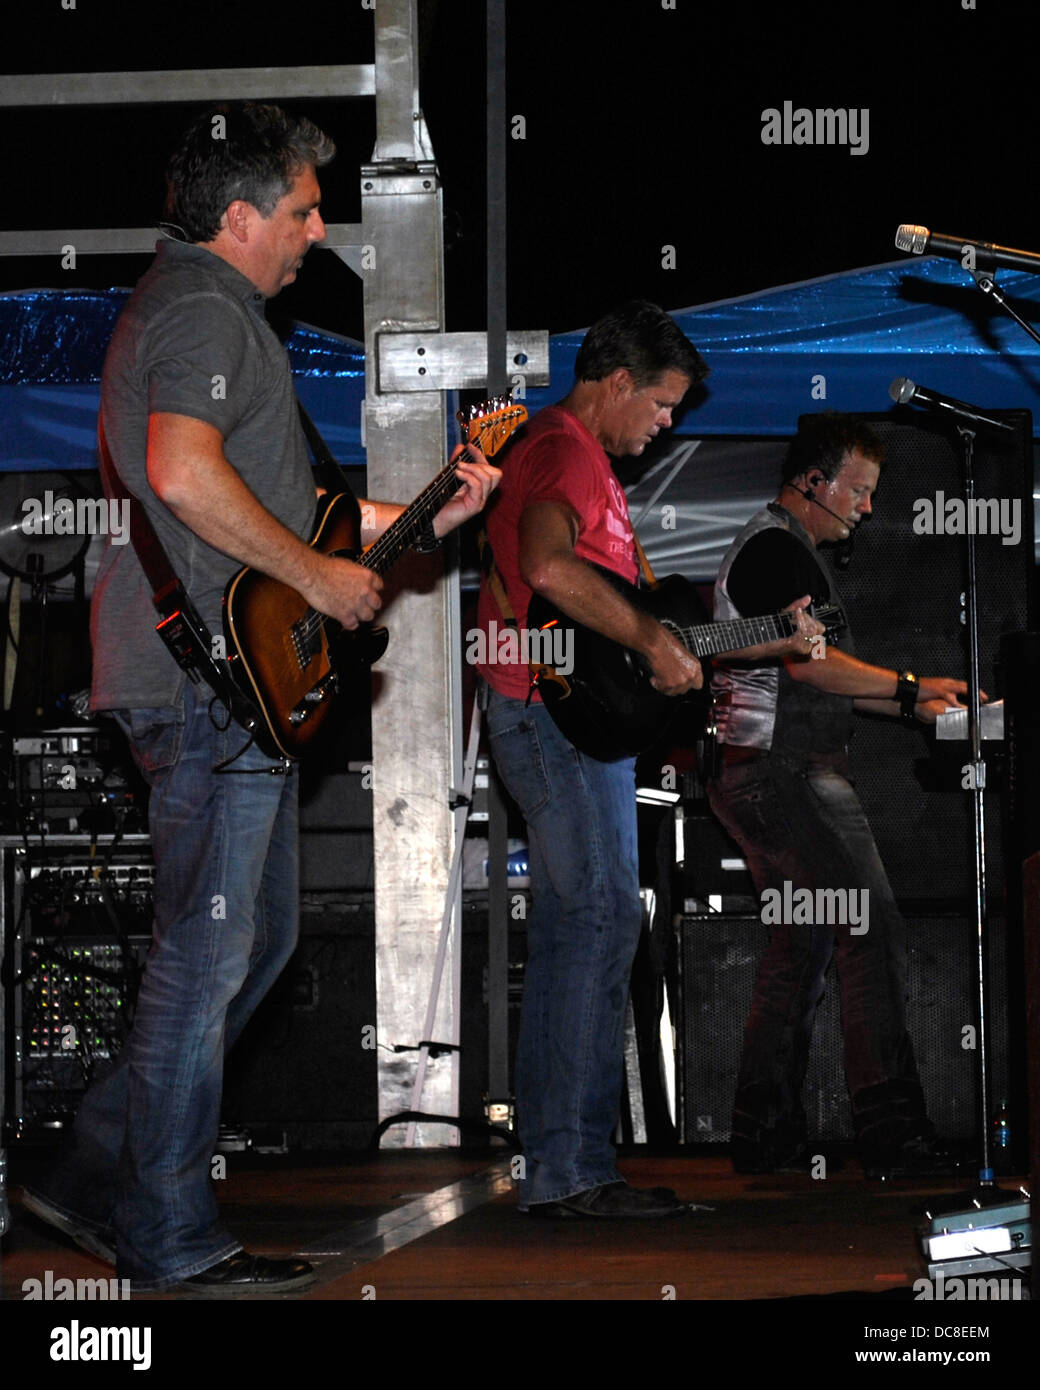 El grupo de países, Lonestar en concierto en Albertville, Alabama Foto de stock